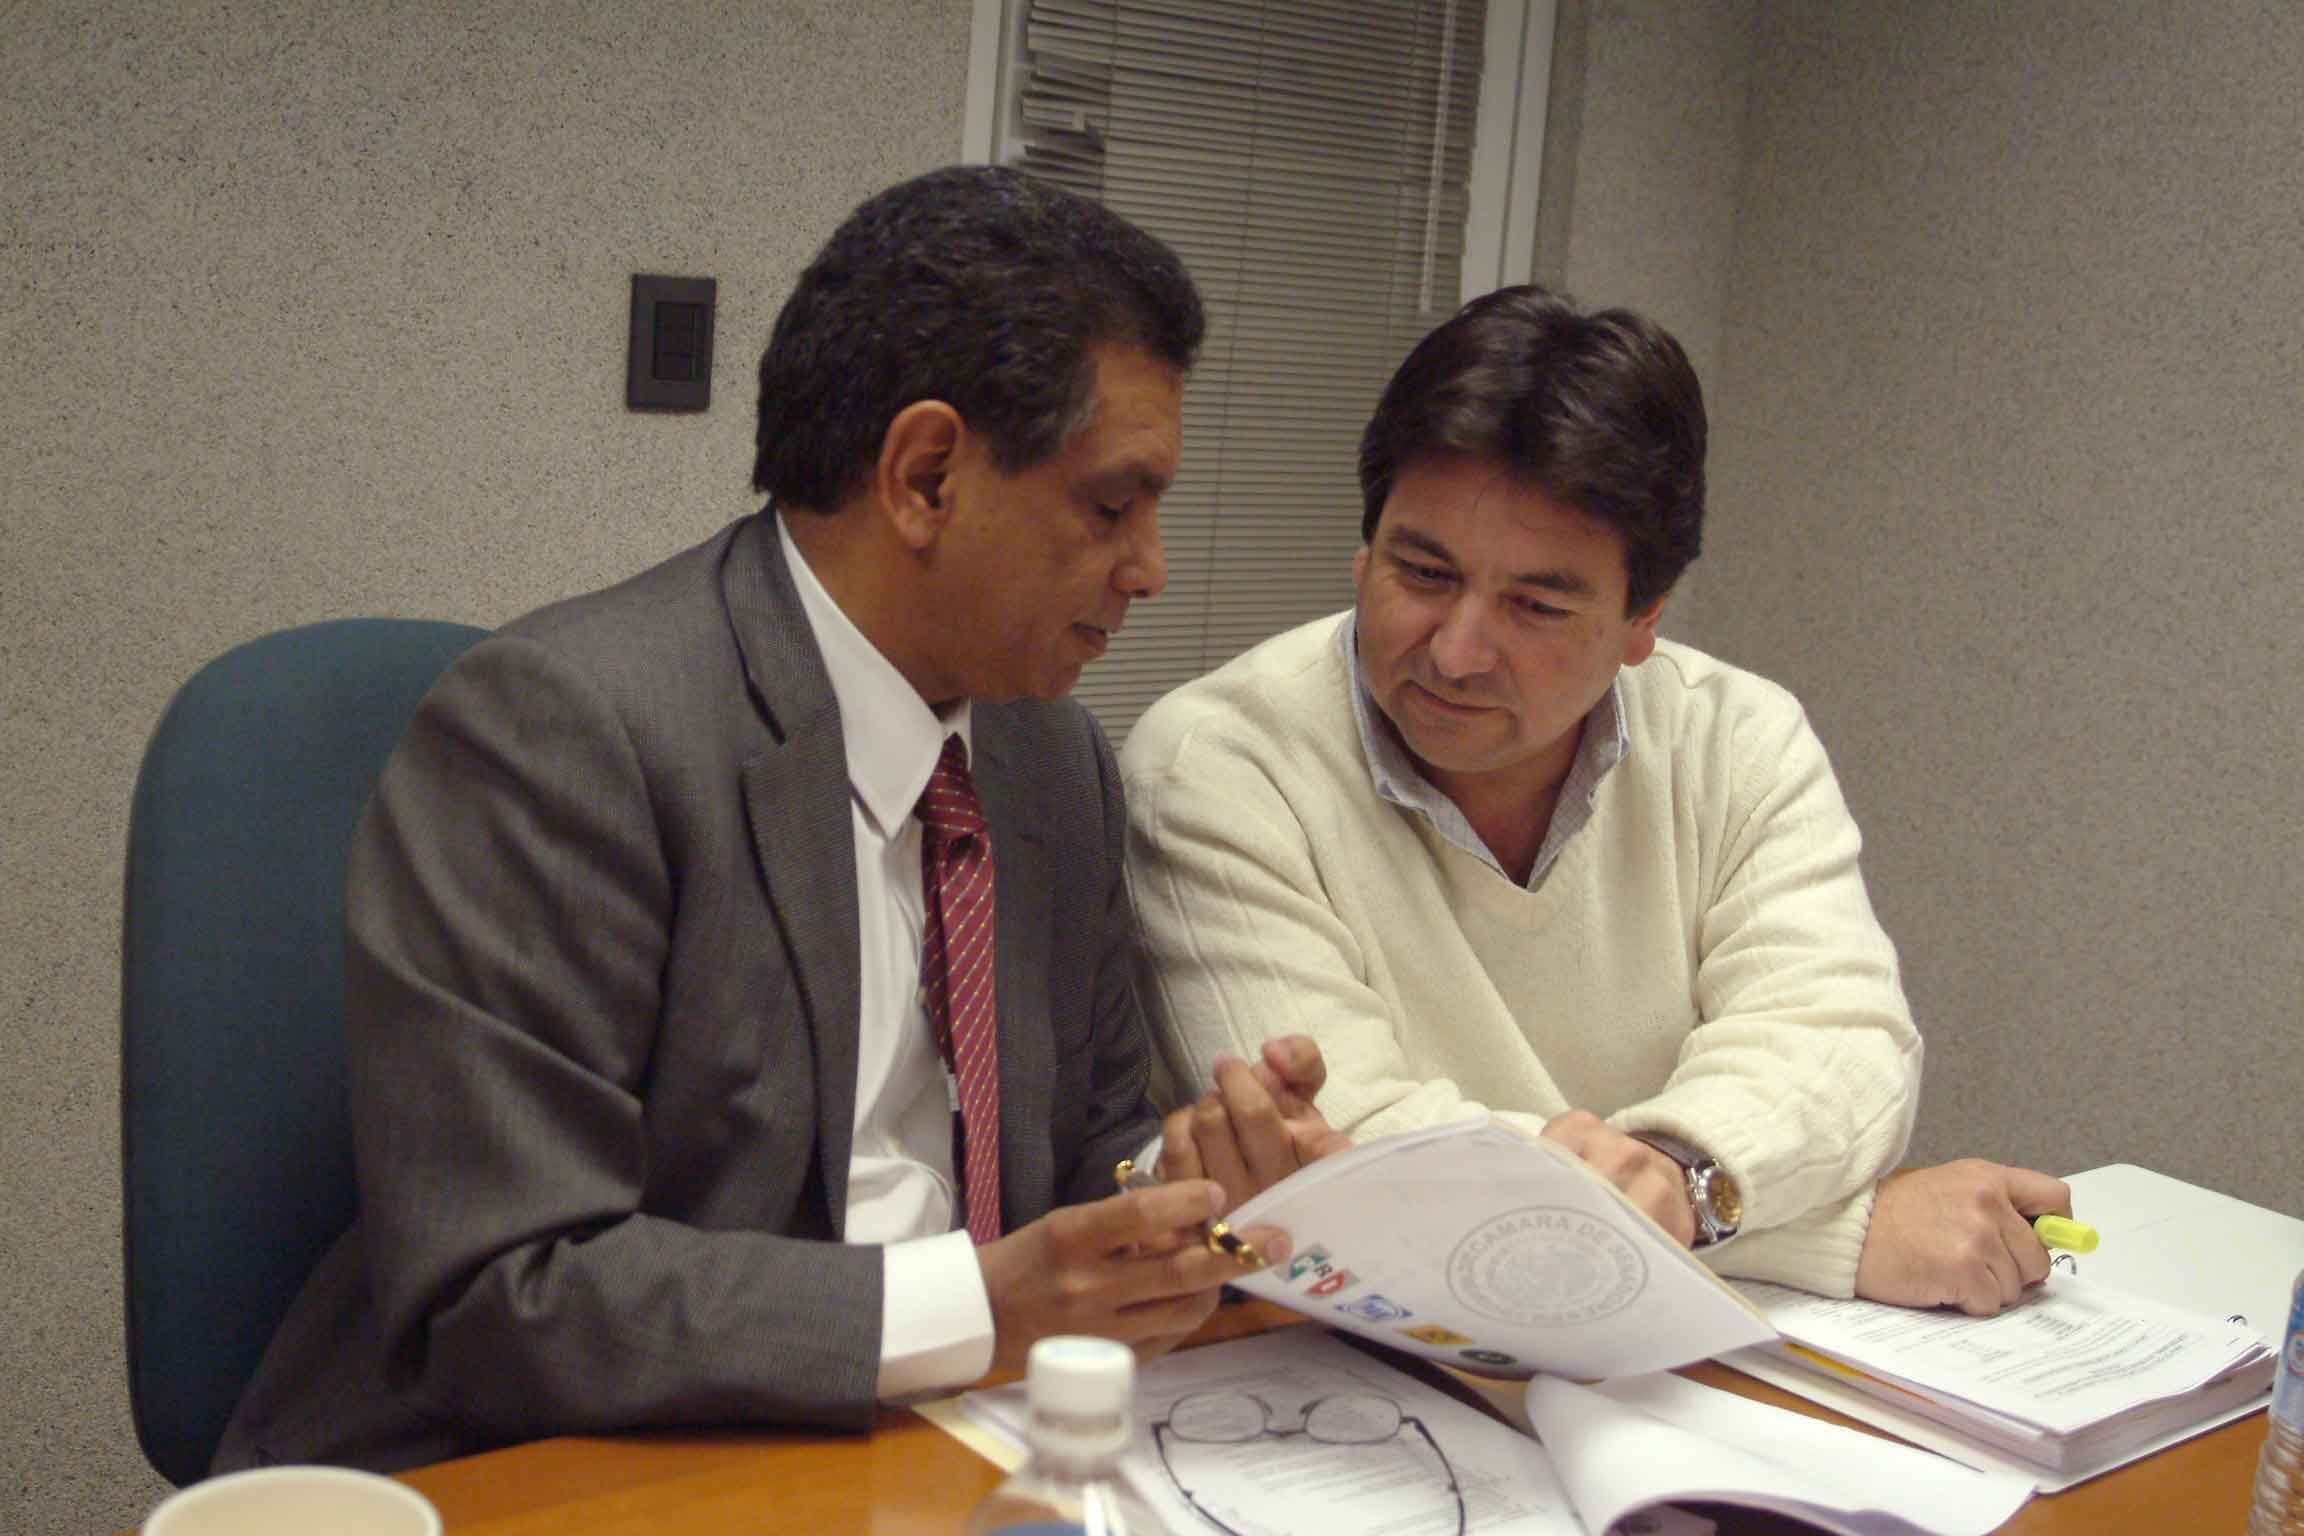 El exsecretario general adjunto del PRI Alejandro Gutiérrez (derecha) junto al entonces senador Fidel Herrera, en Ciudad de México, en 2003.